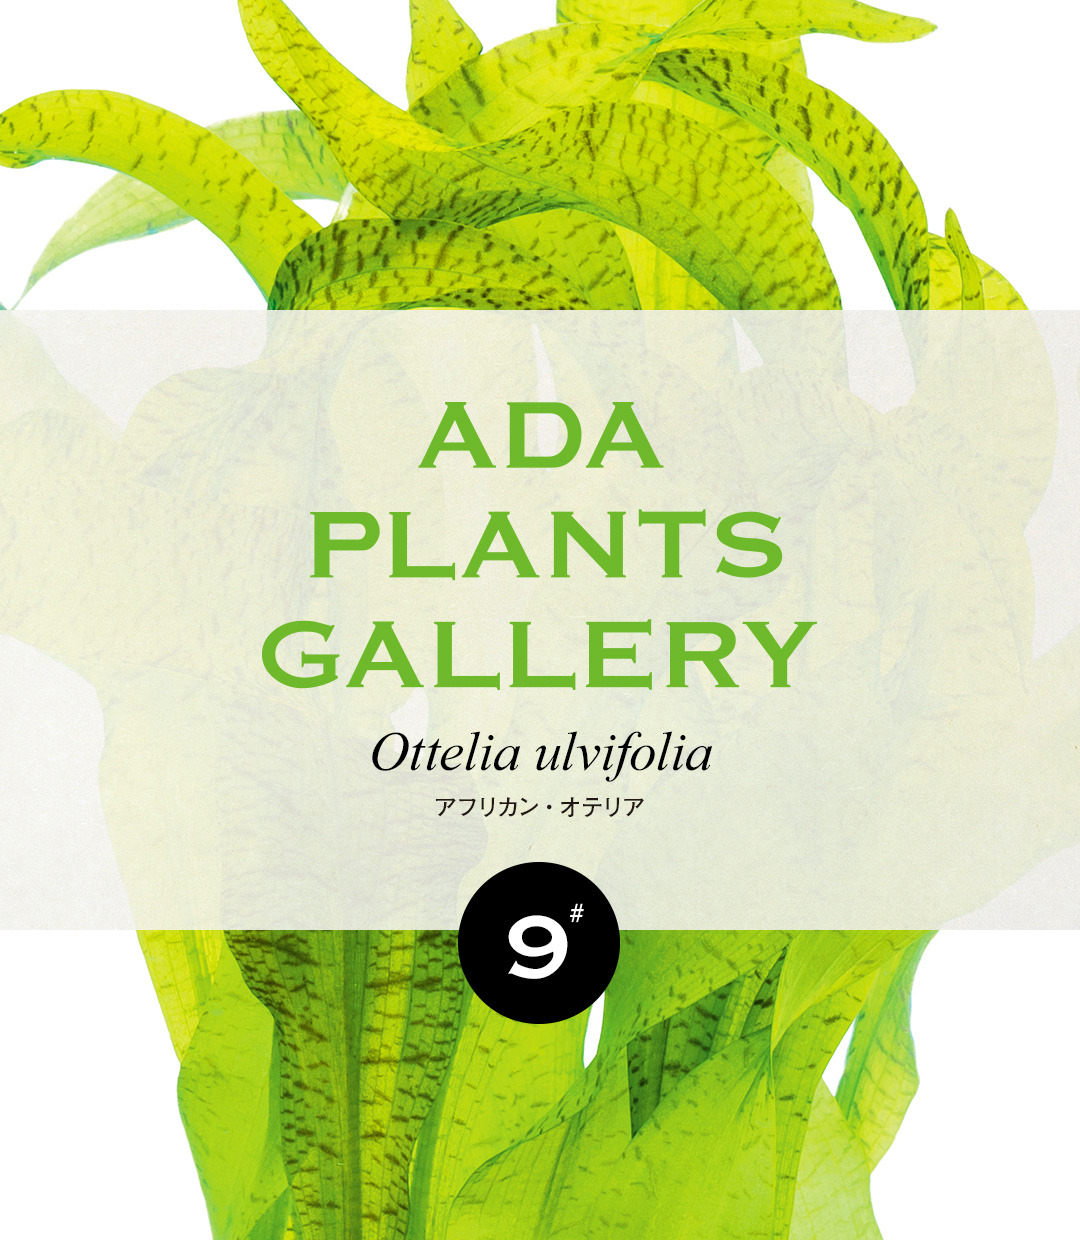 ADA PLANTS GALLERY #09 「アフリカン・オテリア」